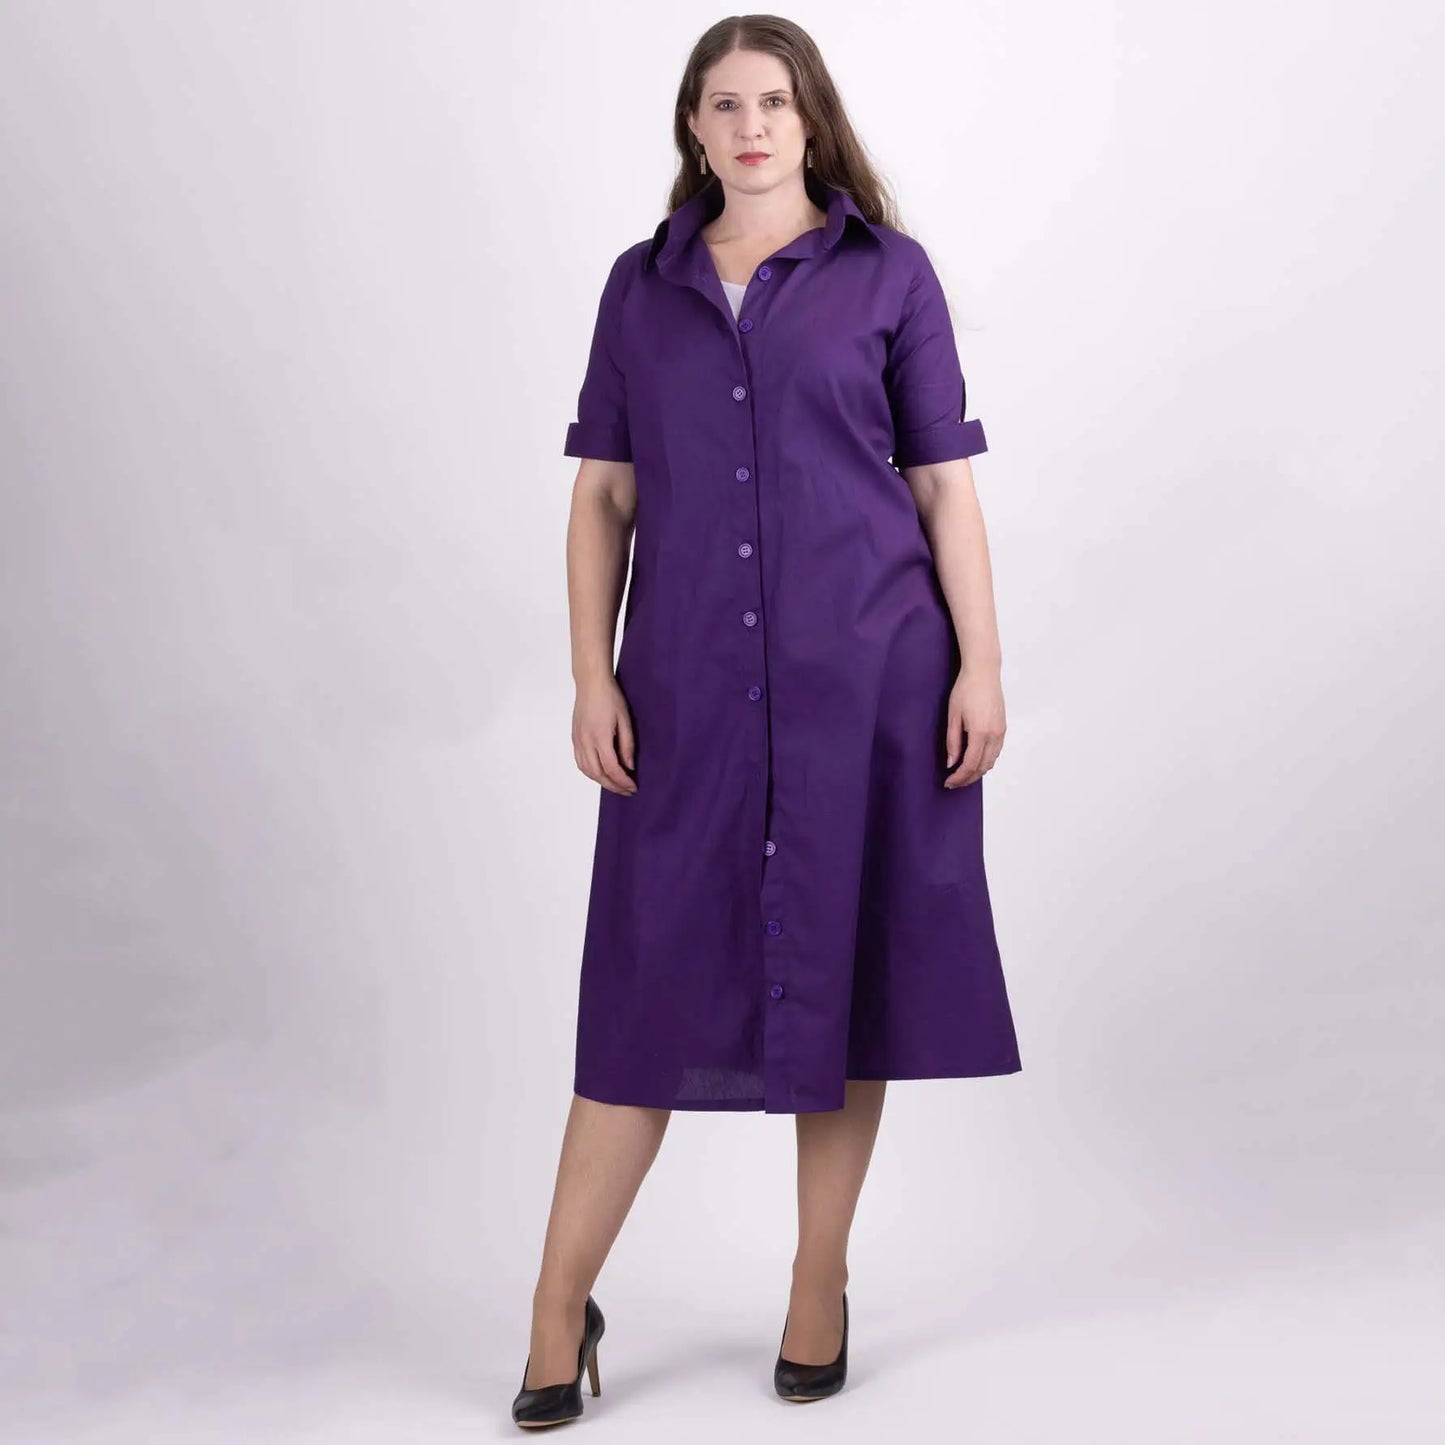 nz made purple shirt dress for women